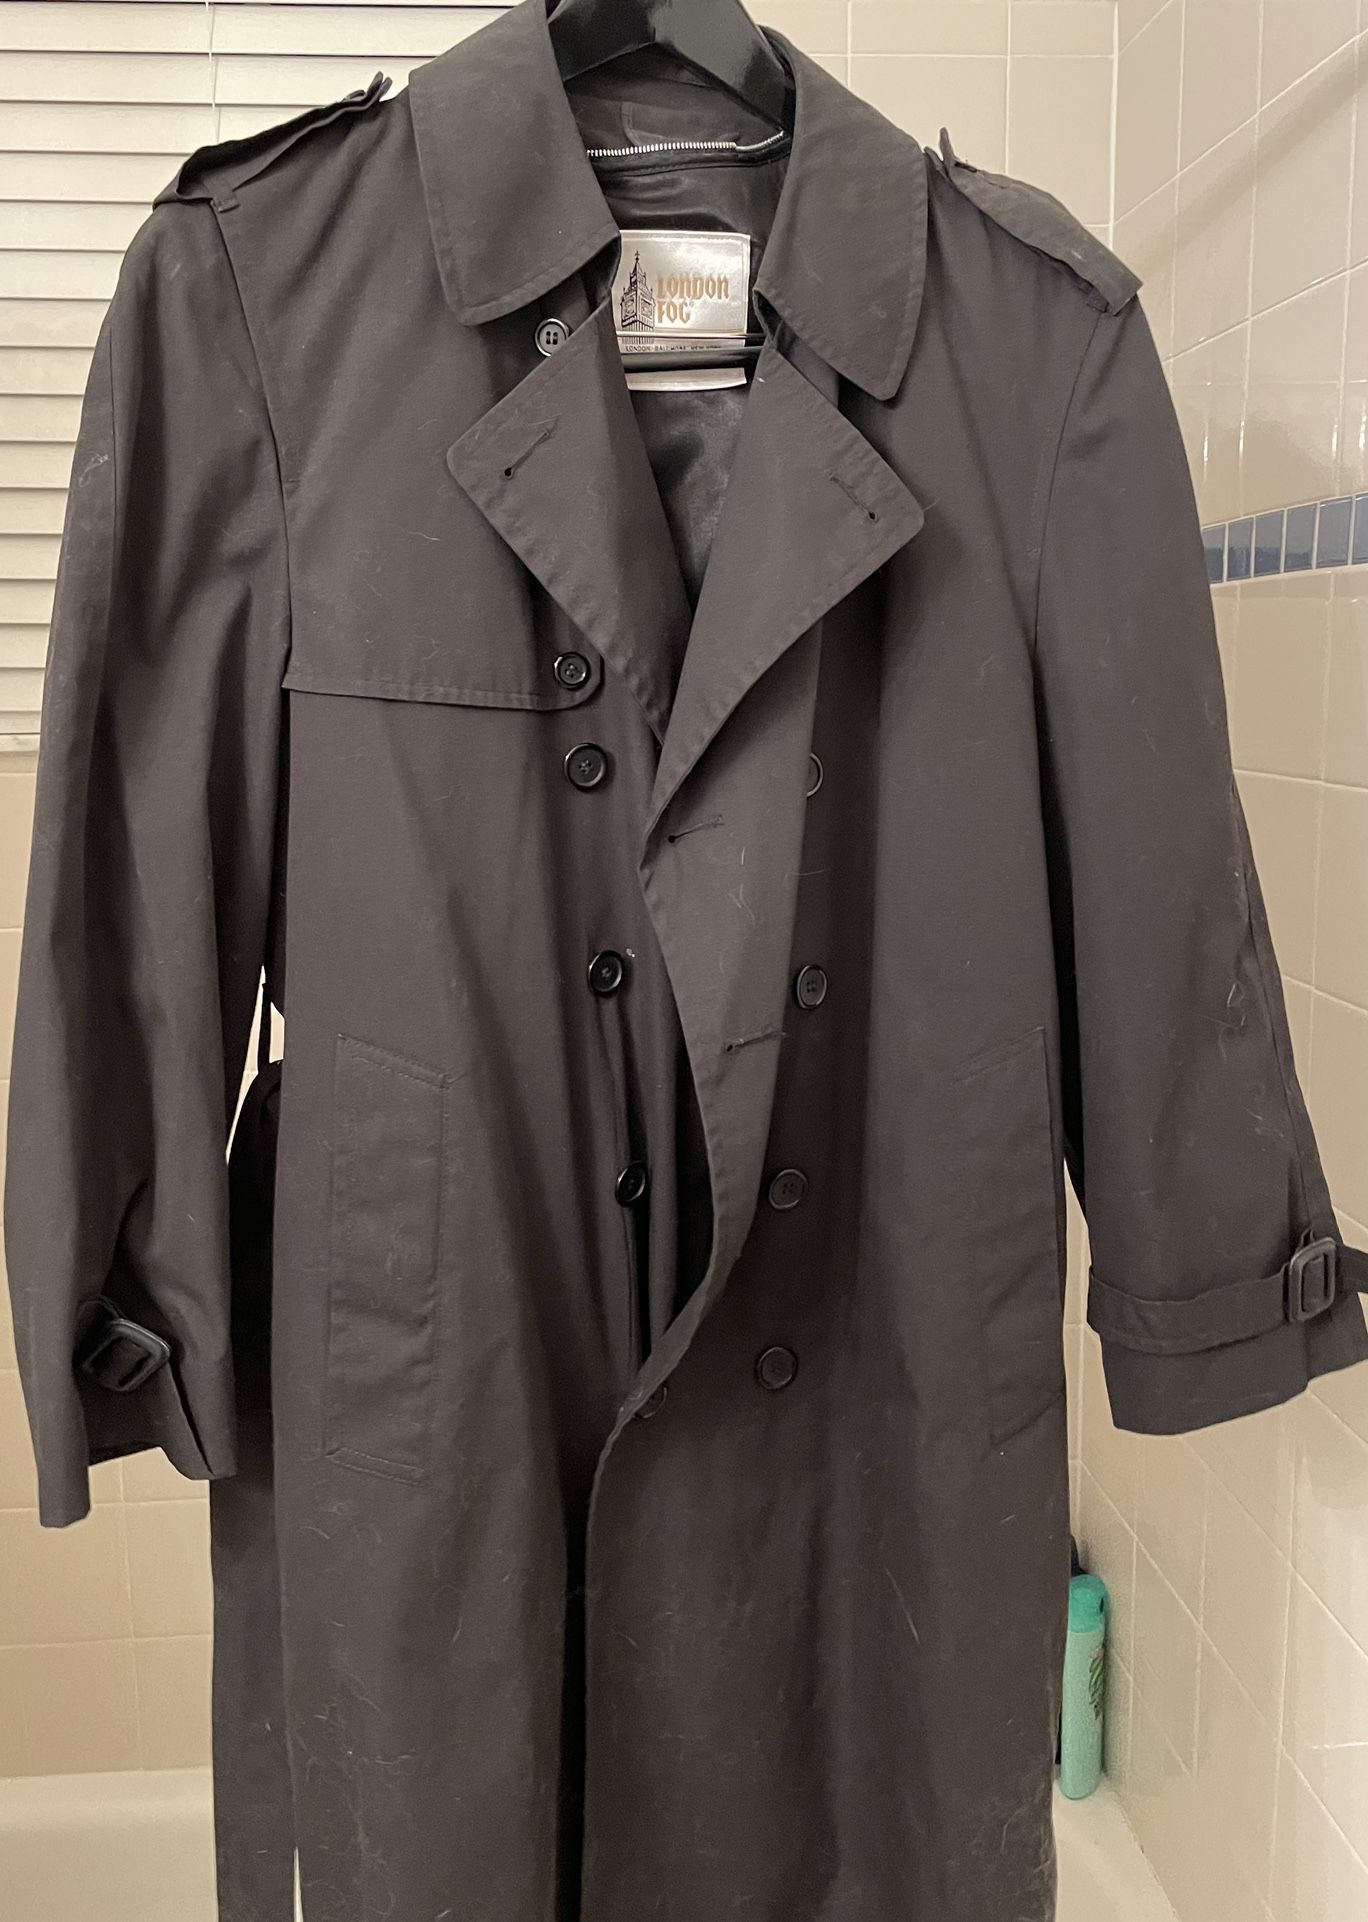 Black London Fog Vintage  Trench coat $30 OBO